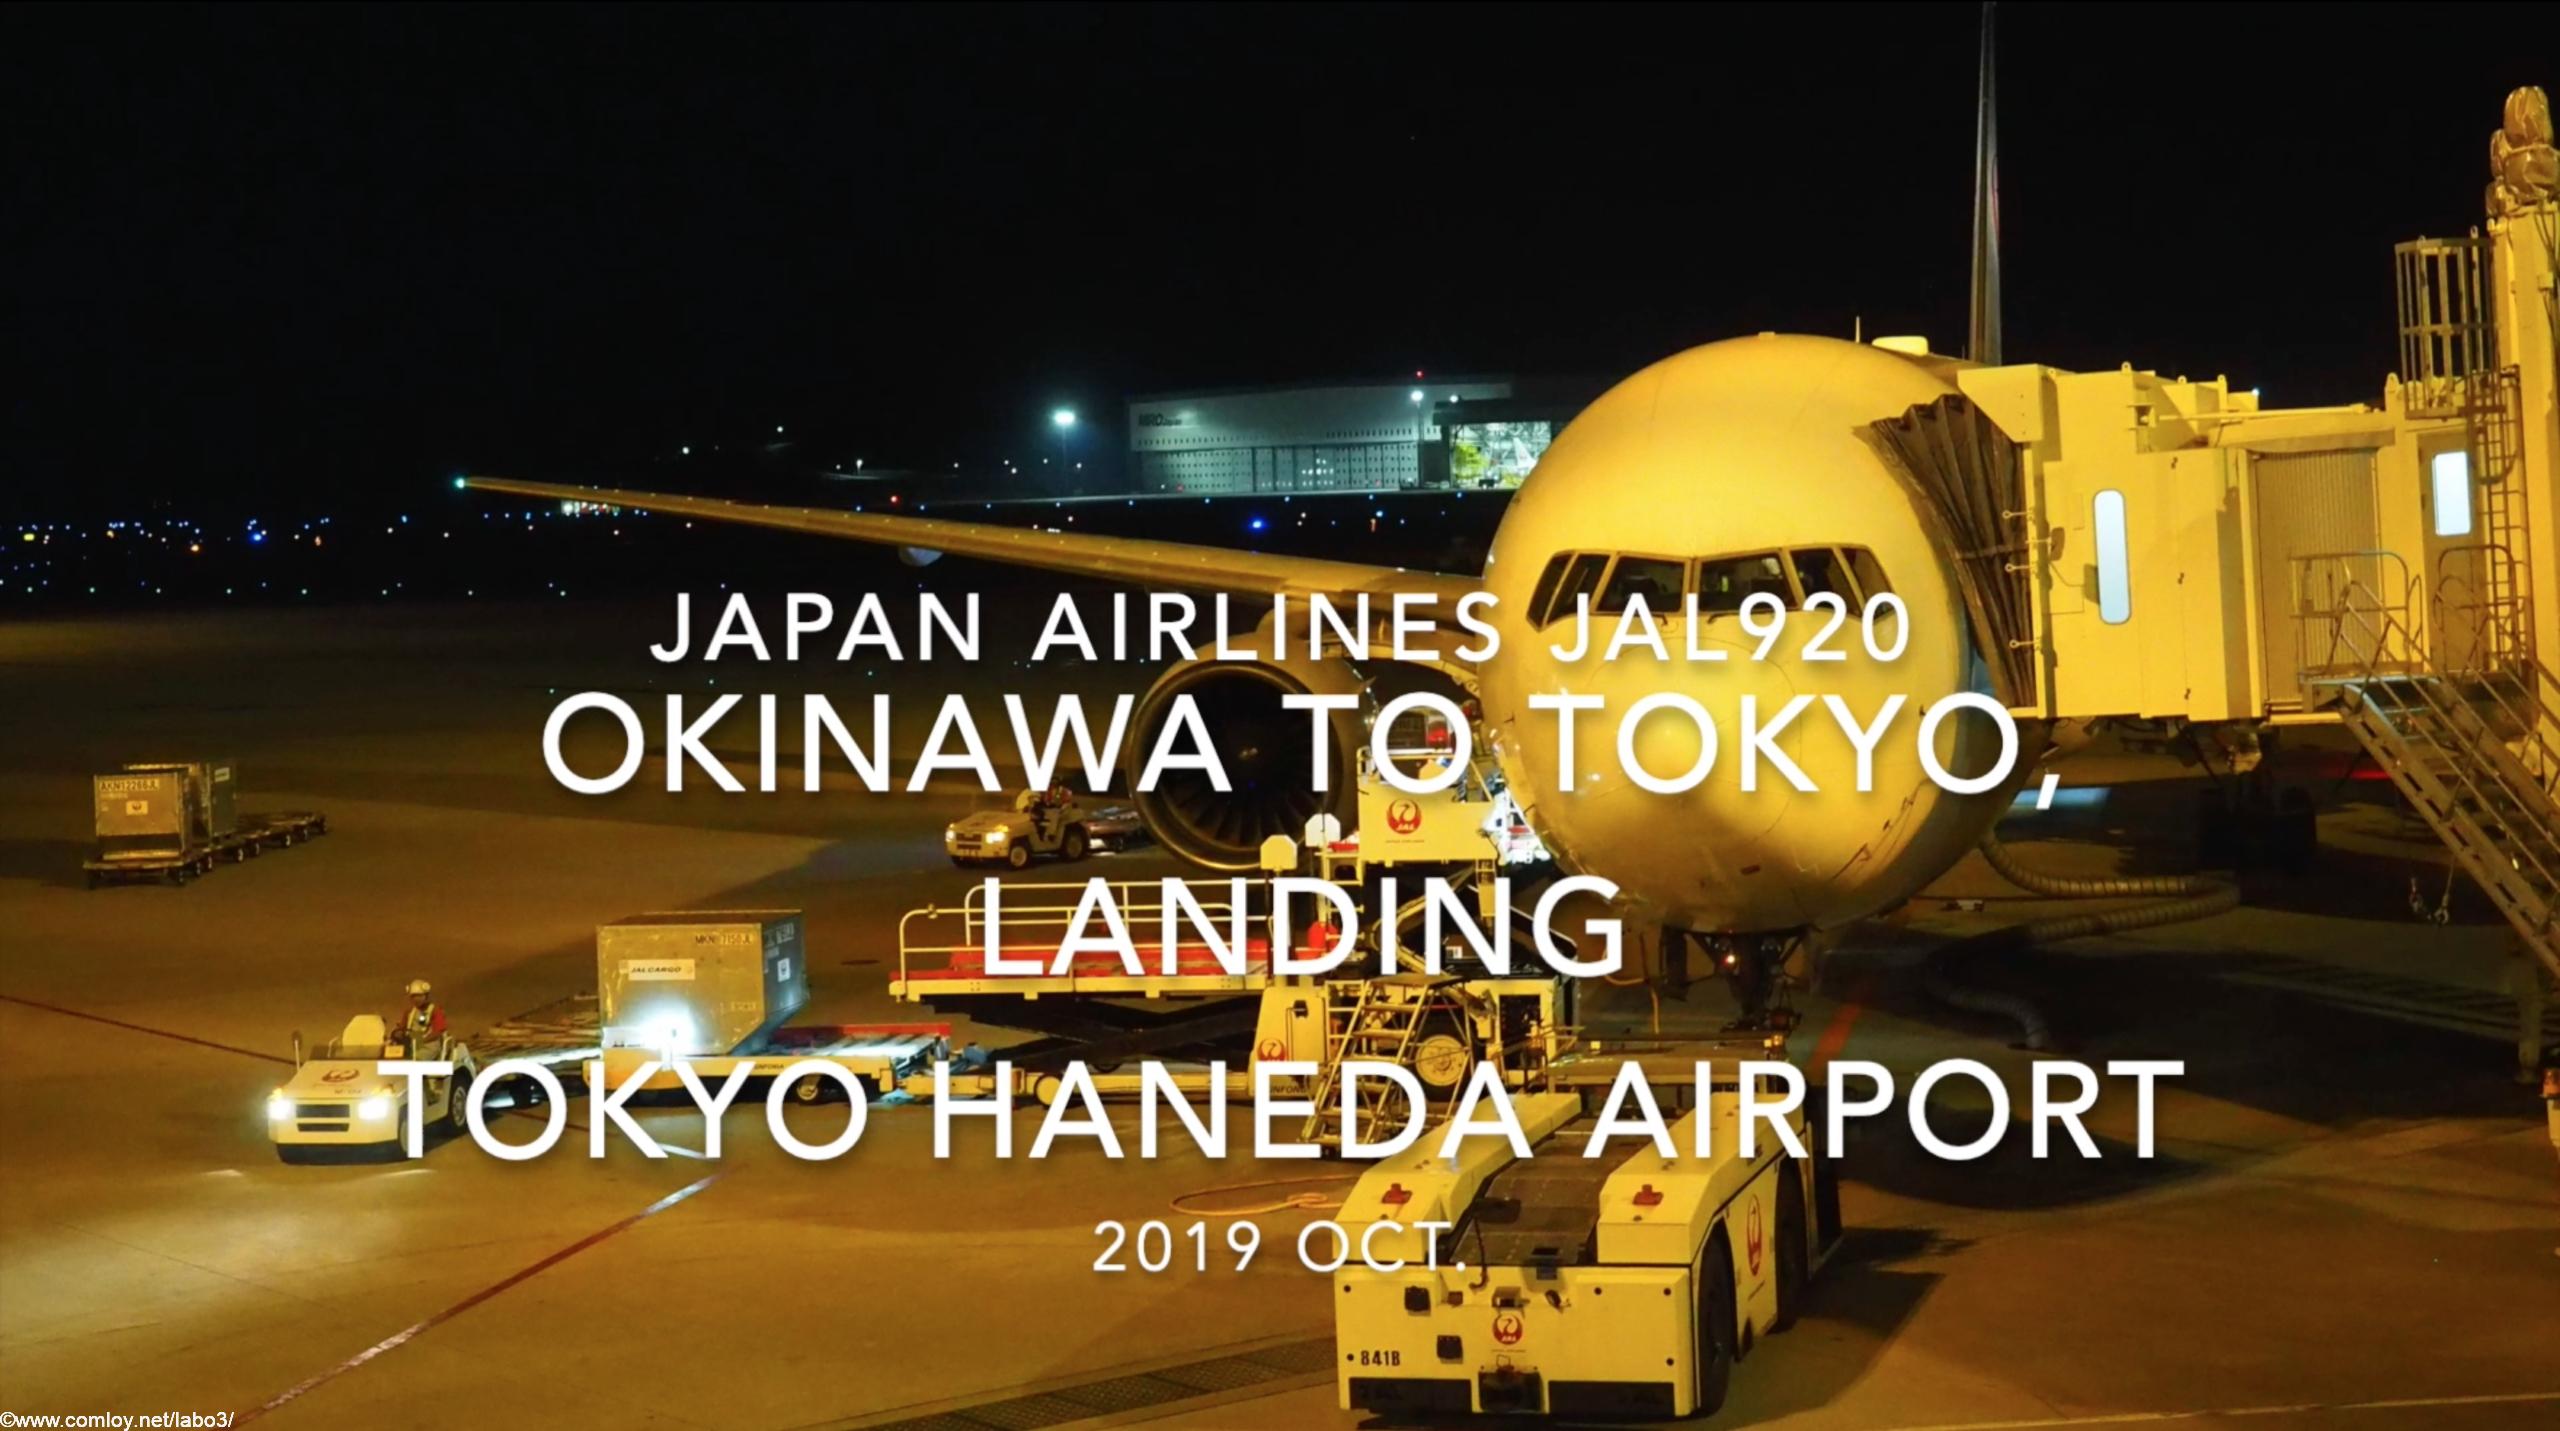 【機内から離着陸映像】2019 Oct Japan airlines JAL920 OKINAWA NAHA to TOKYO HANEDA, Landing TOKYO HANEDA Airport